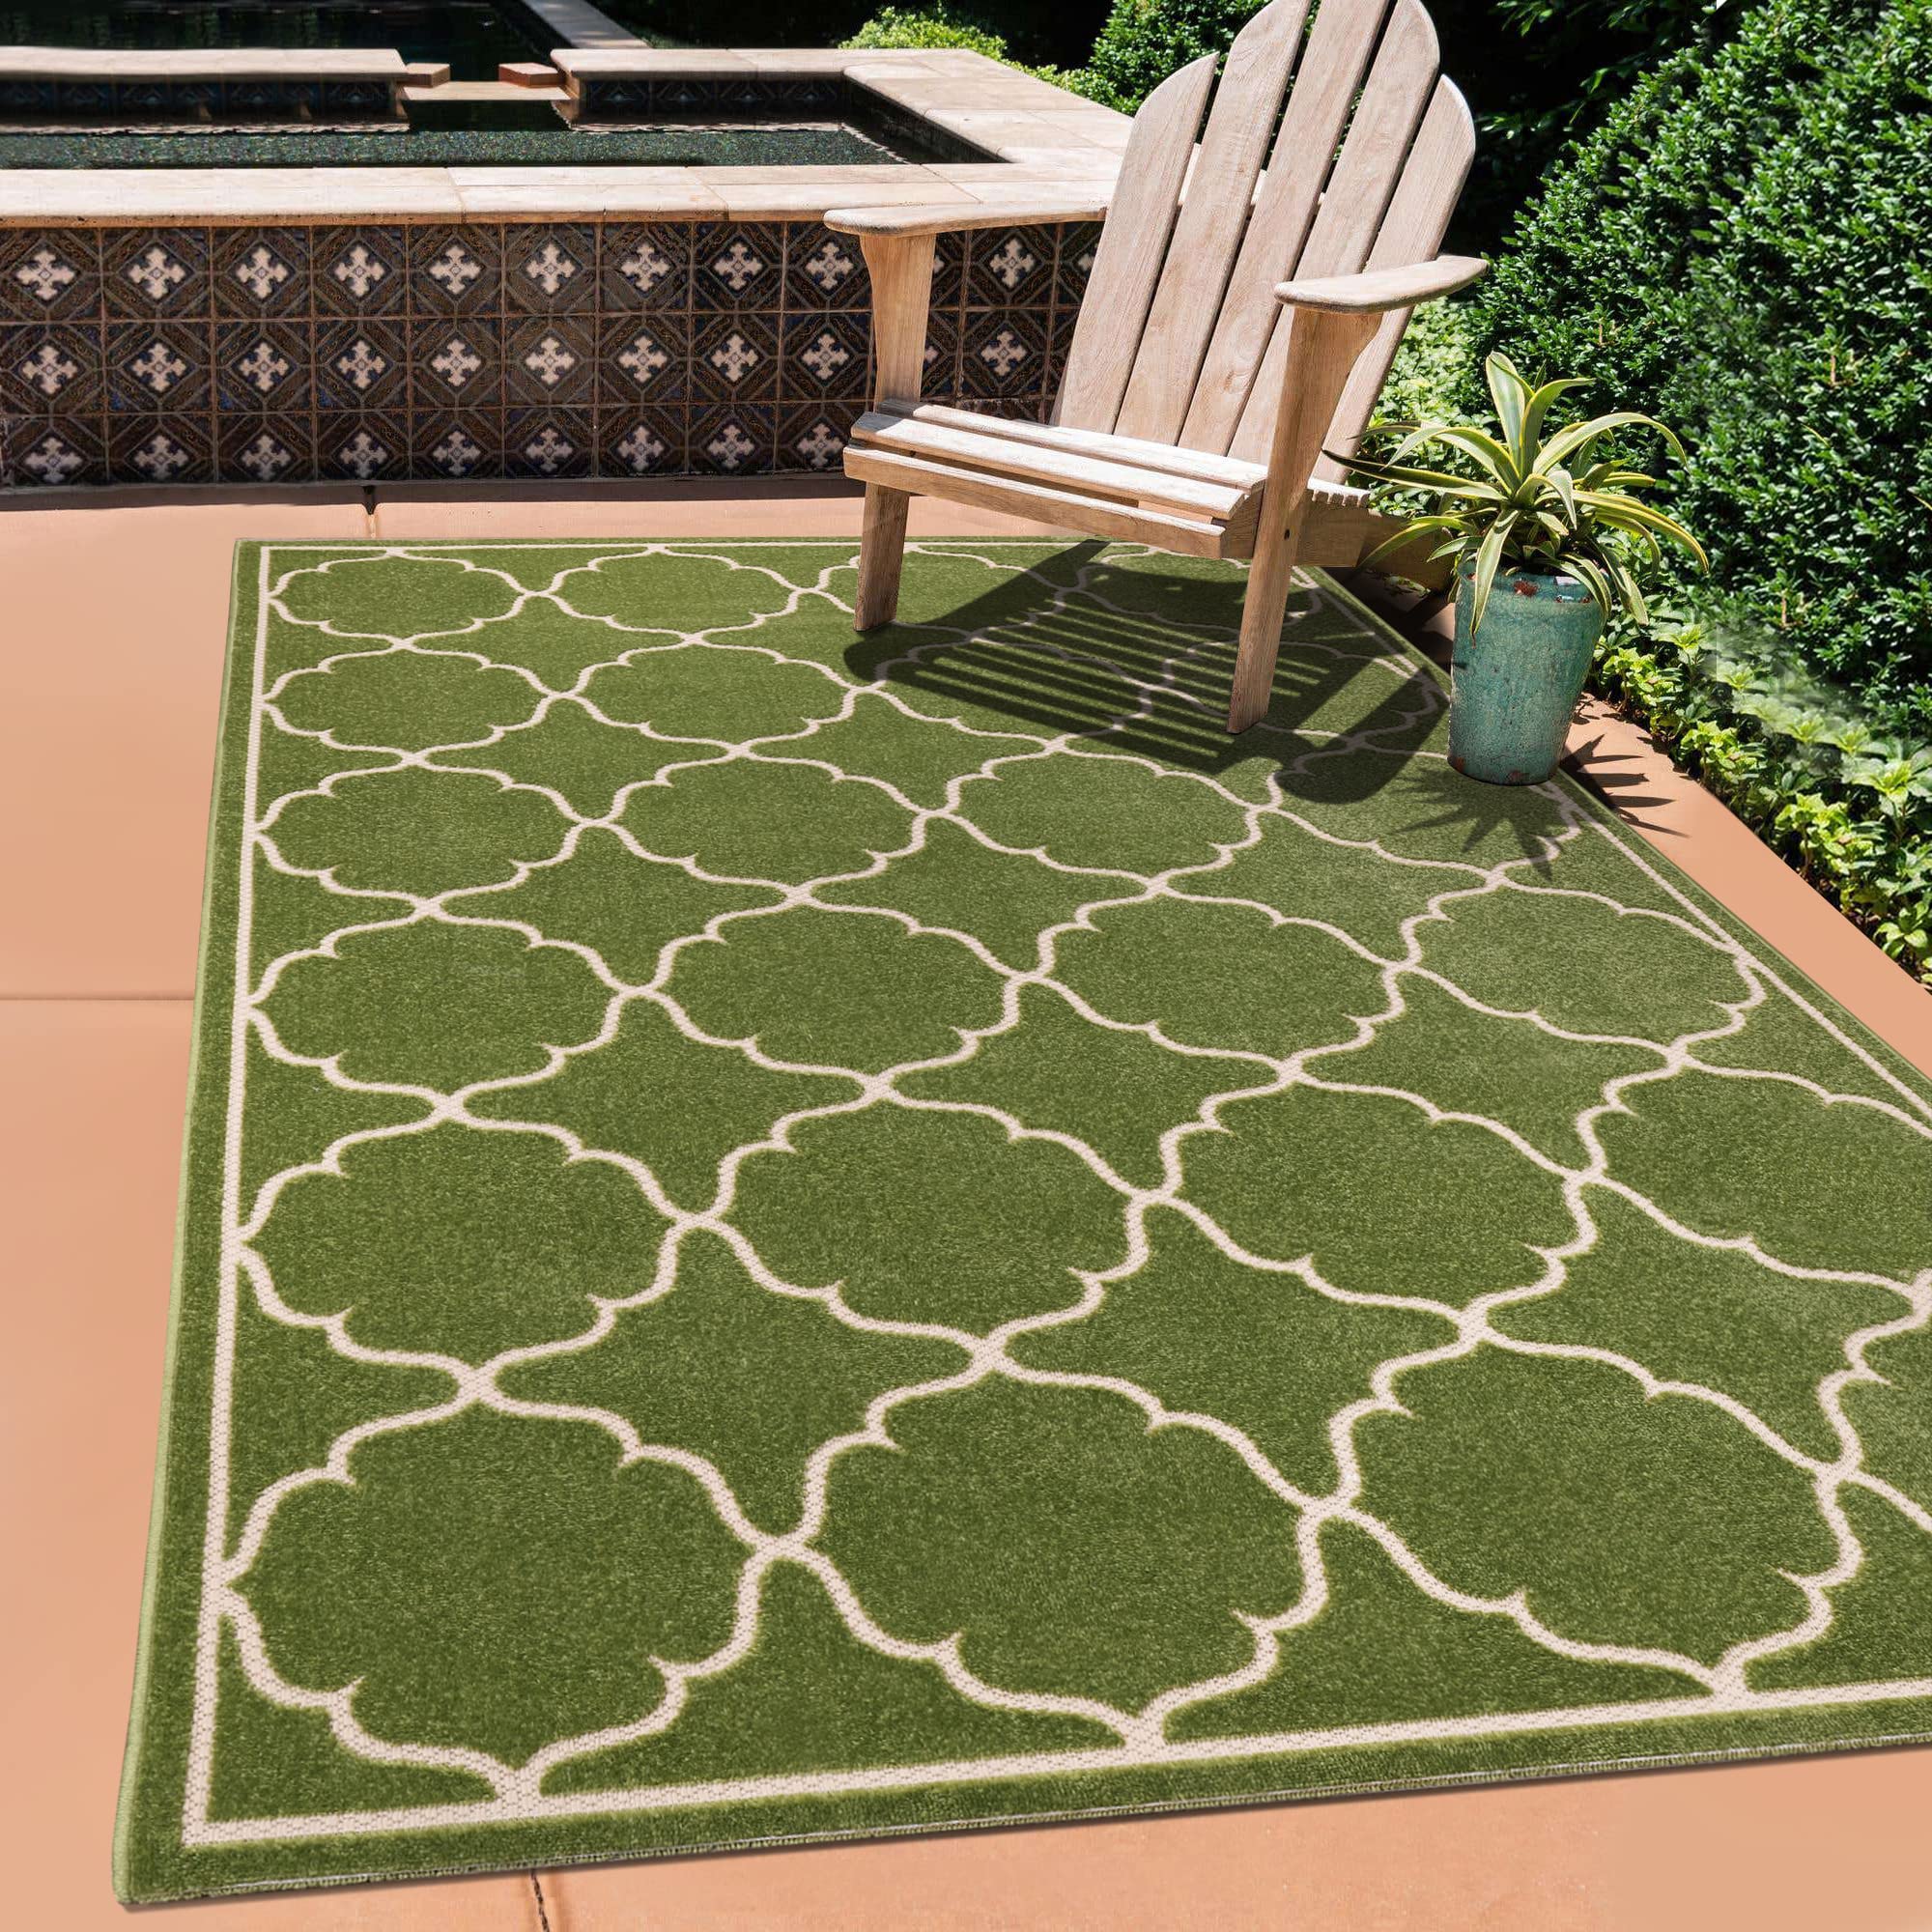 SANAT Outdoor Teppich Wetterfest - Teppich für den Innen- und Außenbereich - Balkon Teppich Wasserabweisend - Teppiche für Terrasse, Garten, Küche, Bad oder Wohnzimmer - Grün, 160 x 230 cm